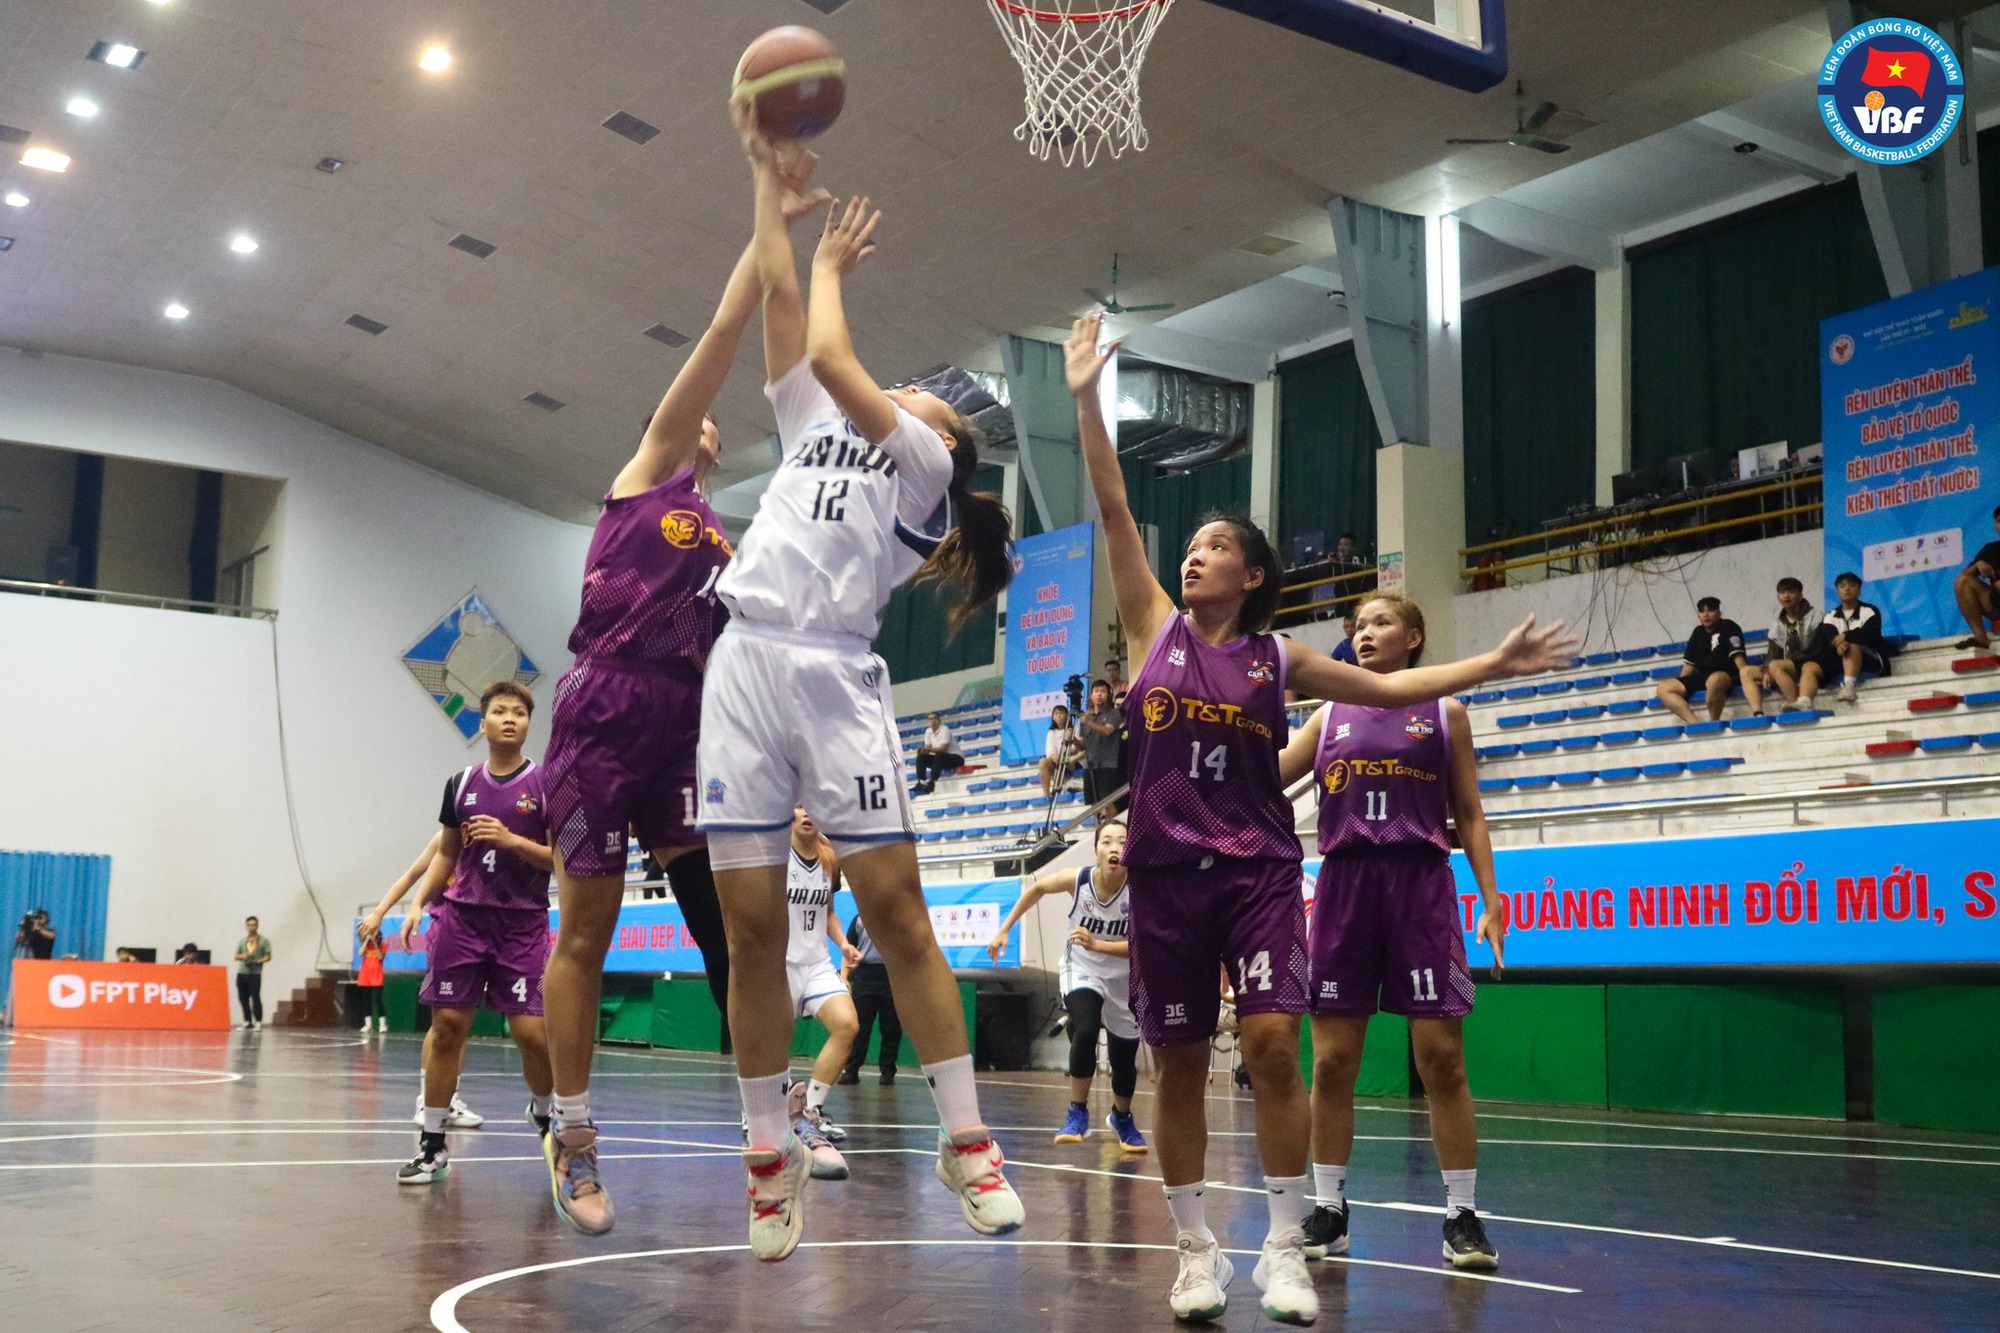 Tổng kết ngày 2 bóng rổ Đại hội Thể thao toàn quốc 2022: Sóc Trăng đánh bại TP. Hồ Chí Minh - Ảnh 4.